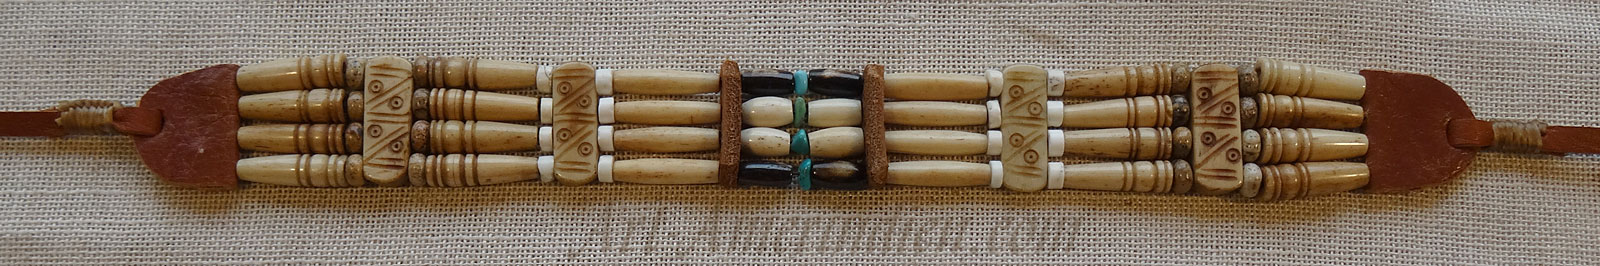 Collier ethnique ras de cou ou choker indien 4 rangées de tubes en os et perles de turquoises, lacet en cuir.